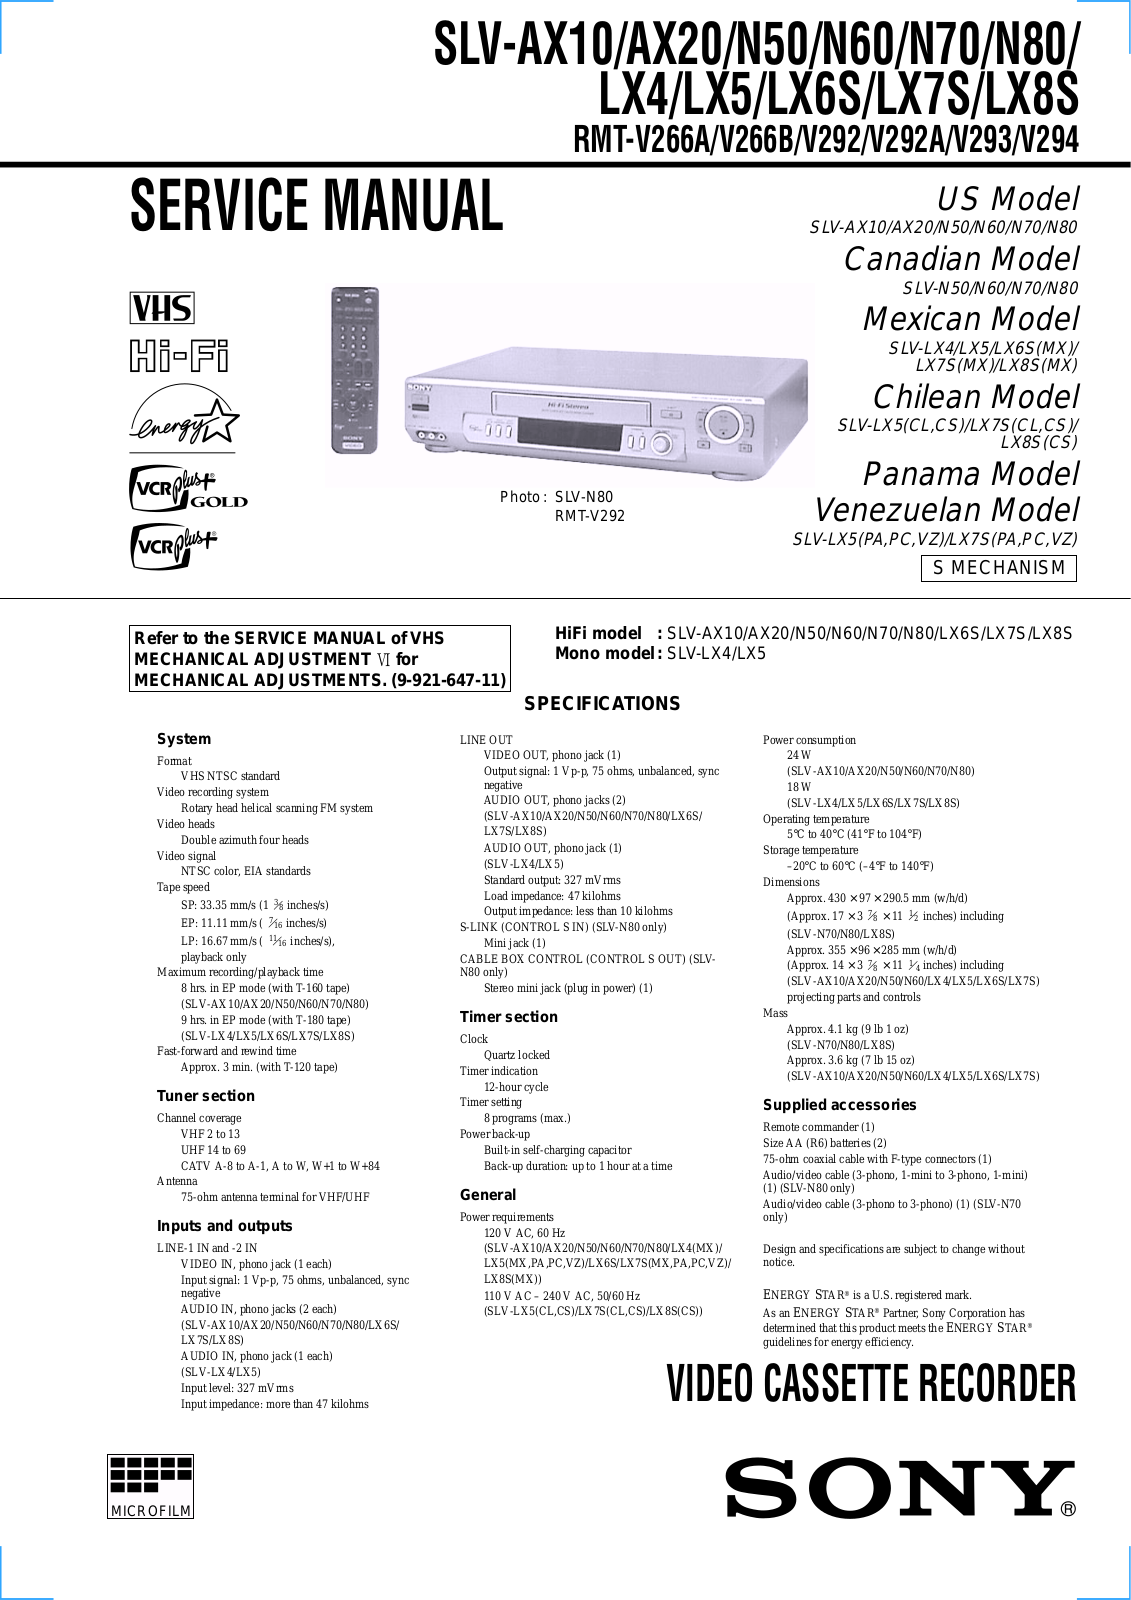 Sony SLV-AX10, SLV-AX20, SLV-N50, SLV-N60, SLV-N70 Service manual